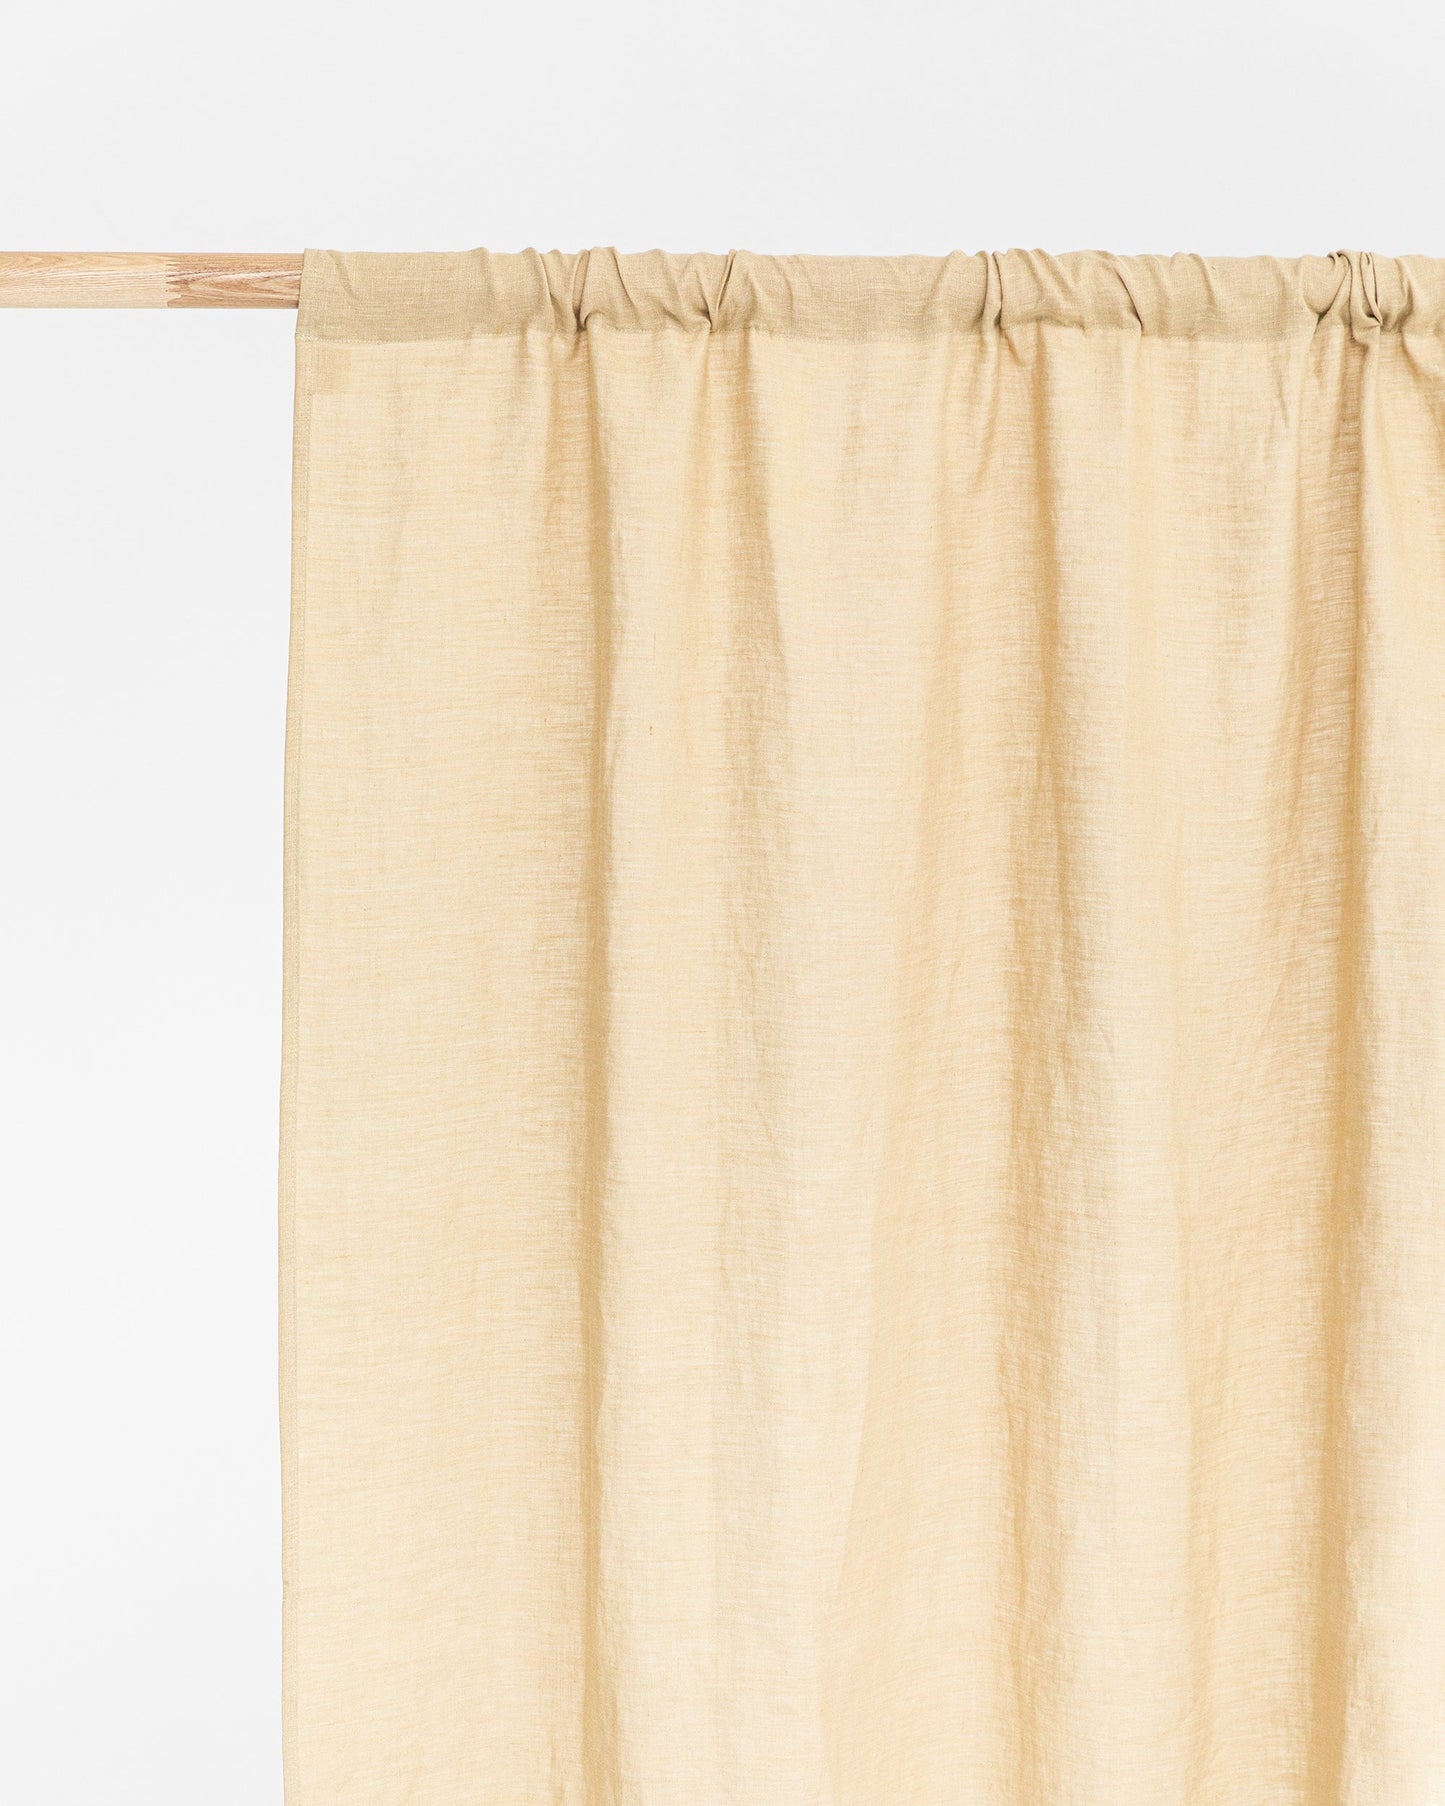 Custom size rod pocket linen curtain panel (1 pcs) in Sandy beige - MagicLinen